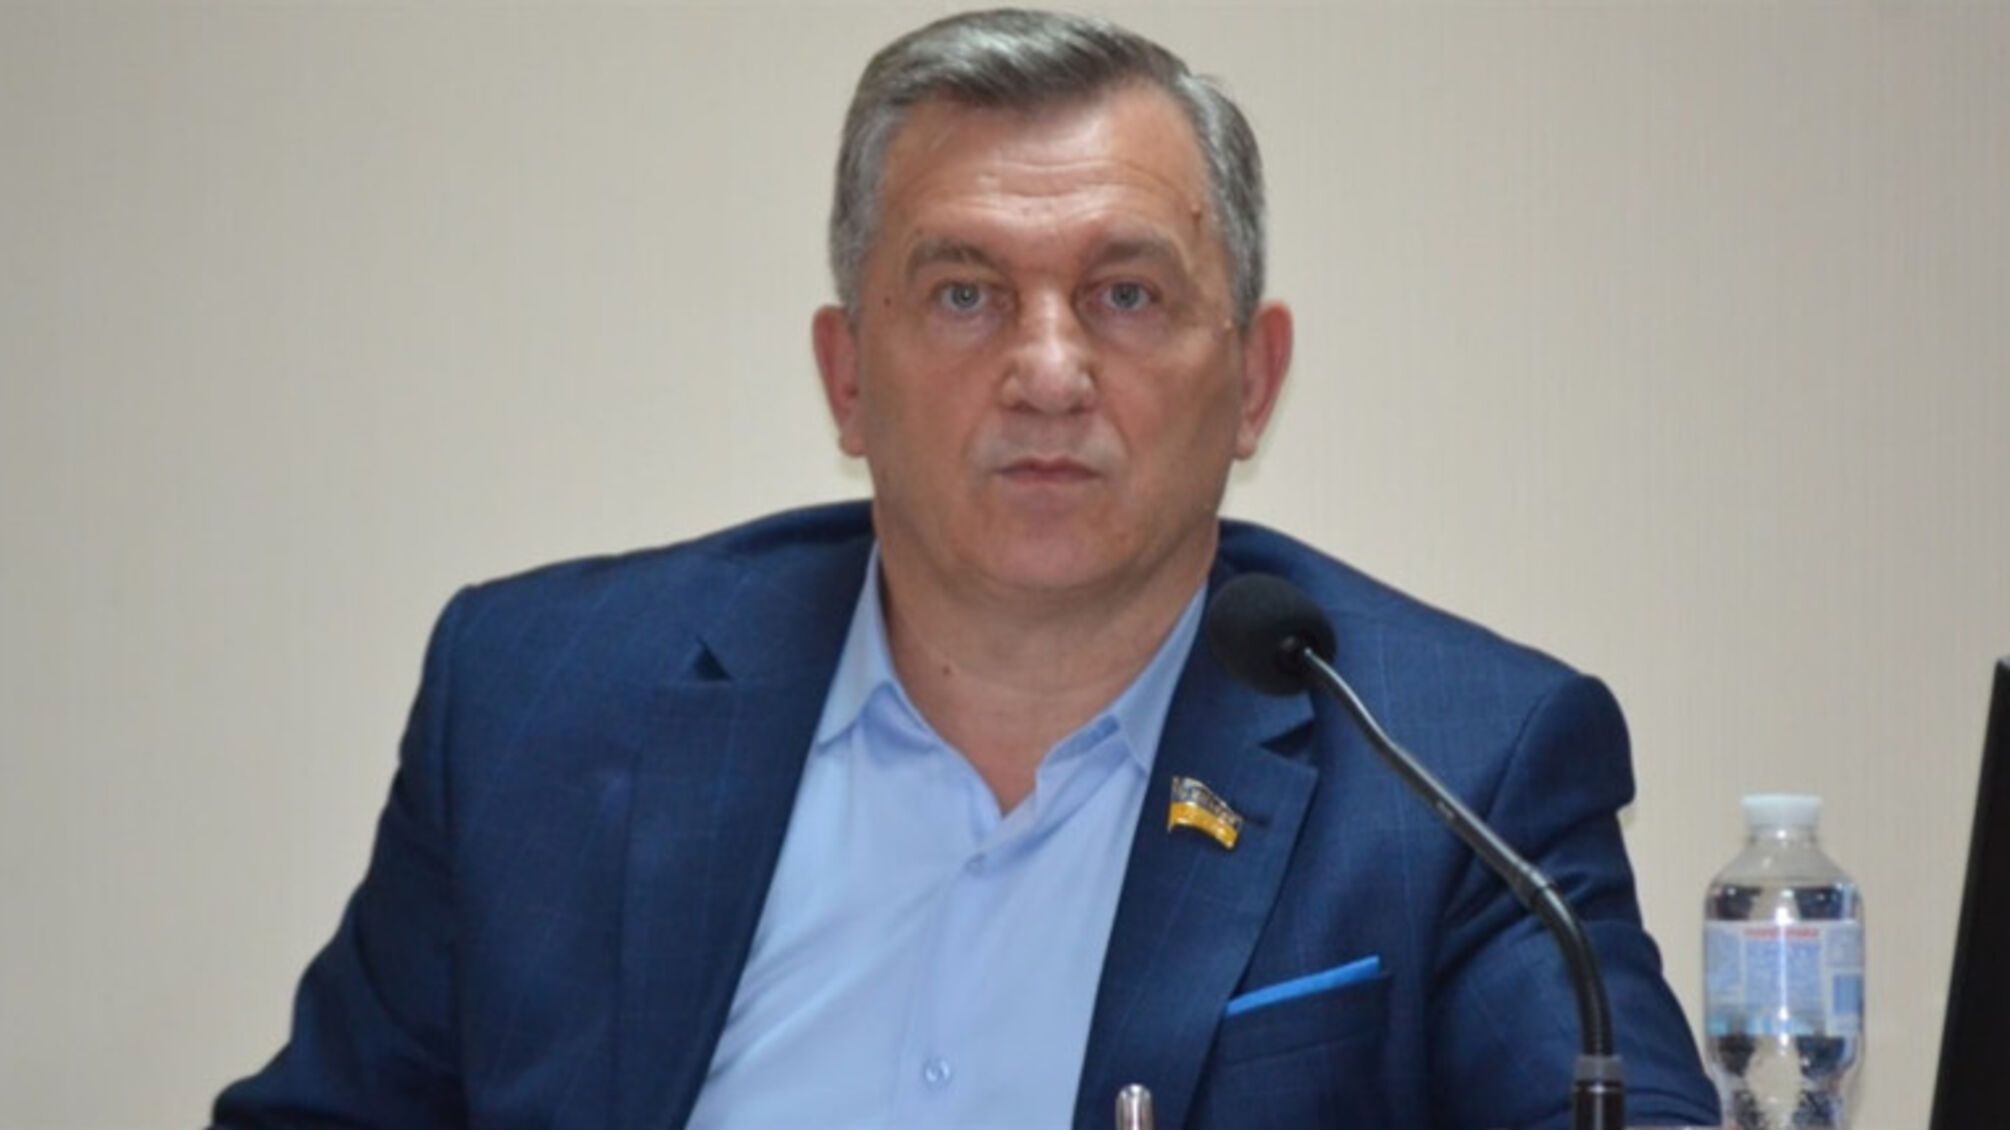 Избил заместительницу: экс-мэру Южноукраинска Онуфриенко объявили подозрение